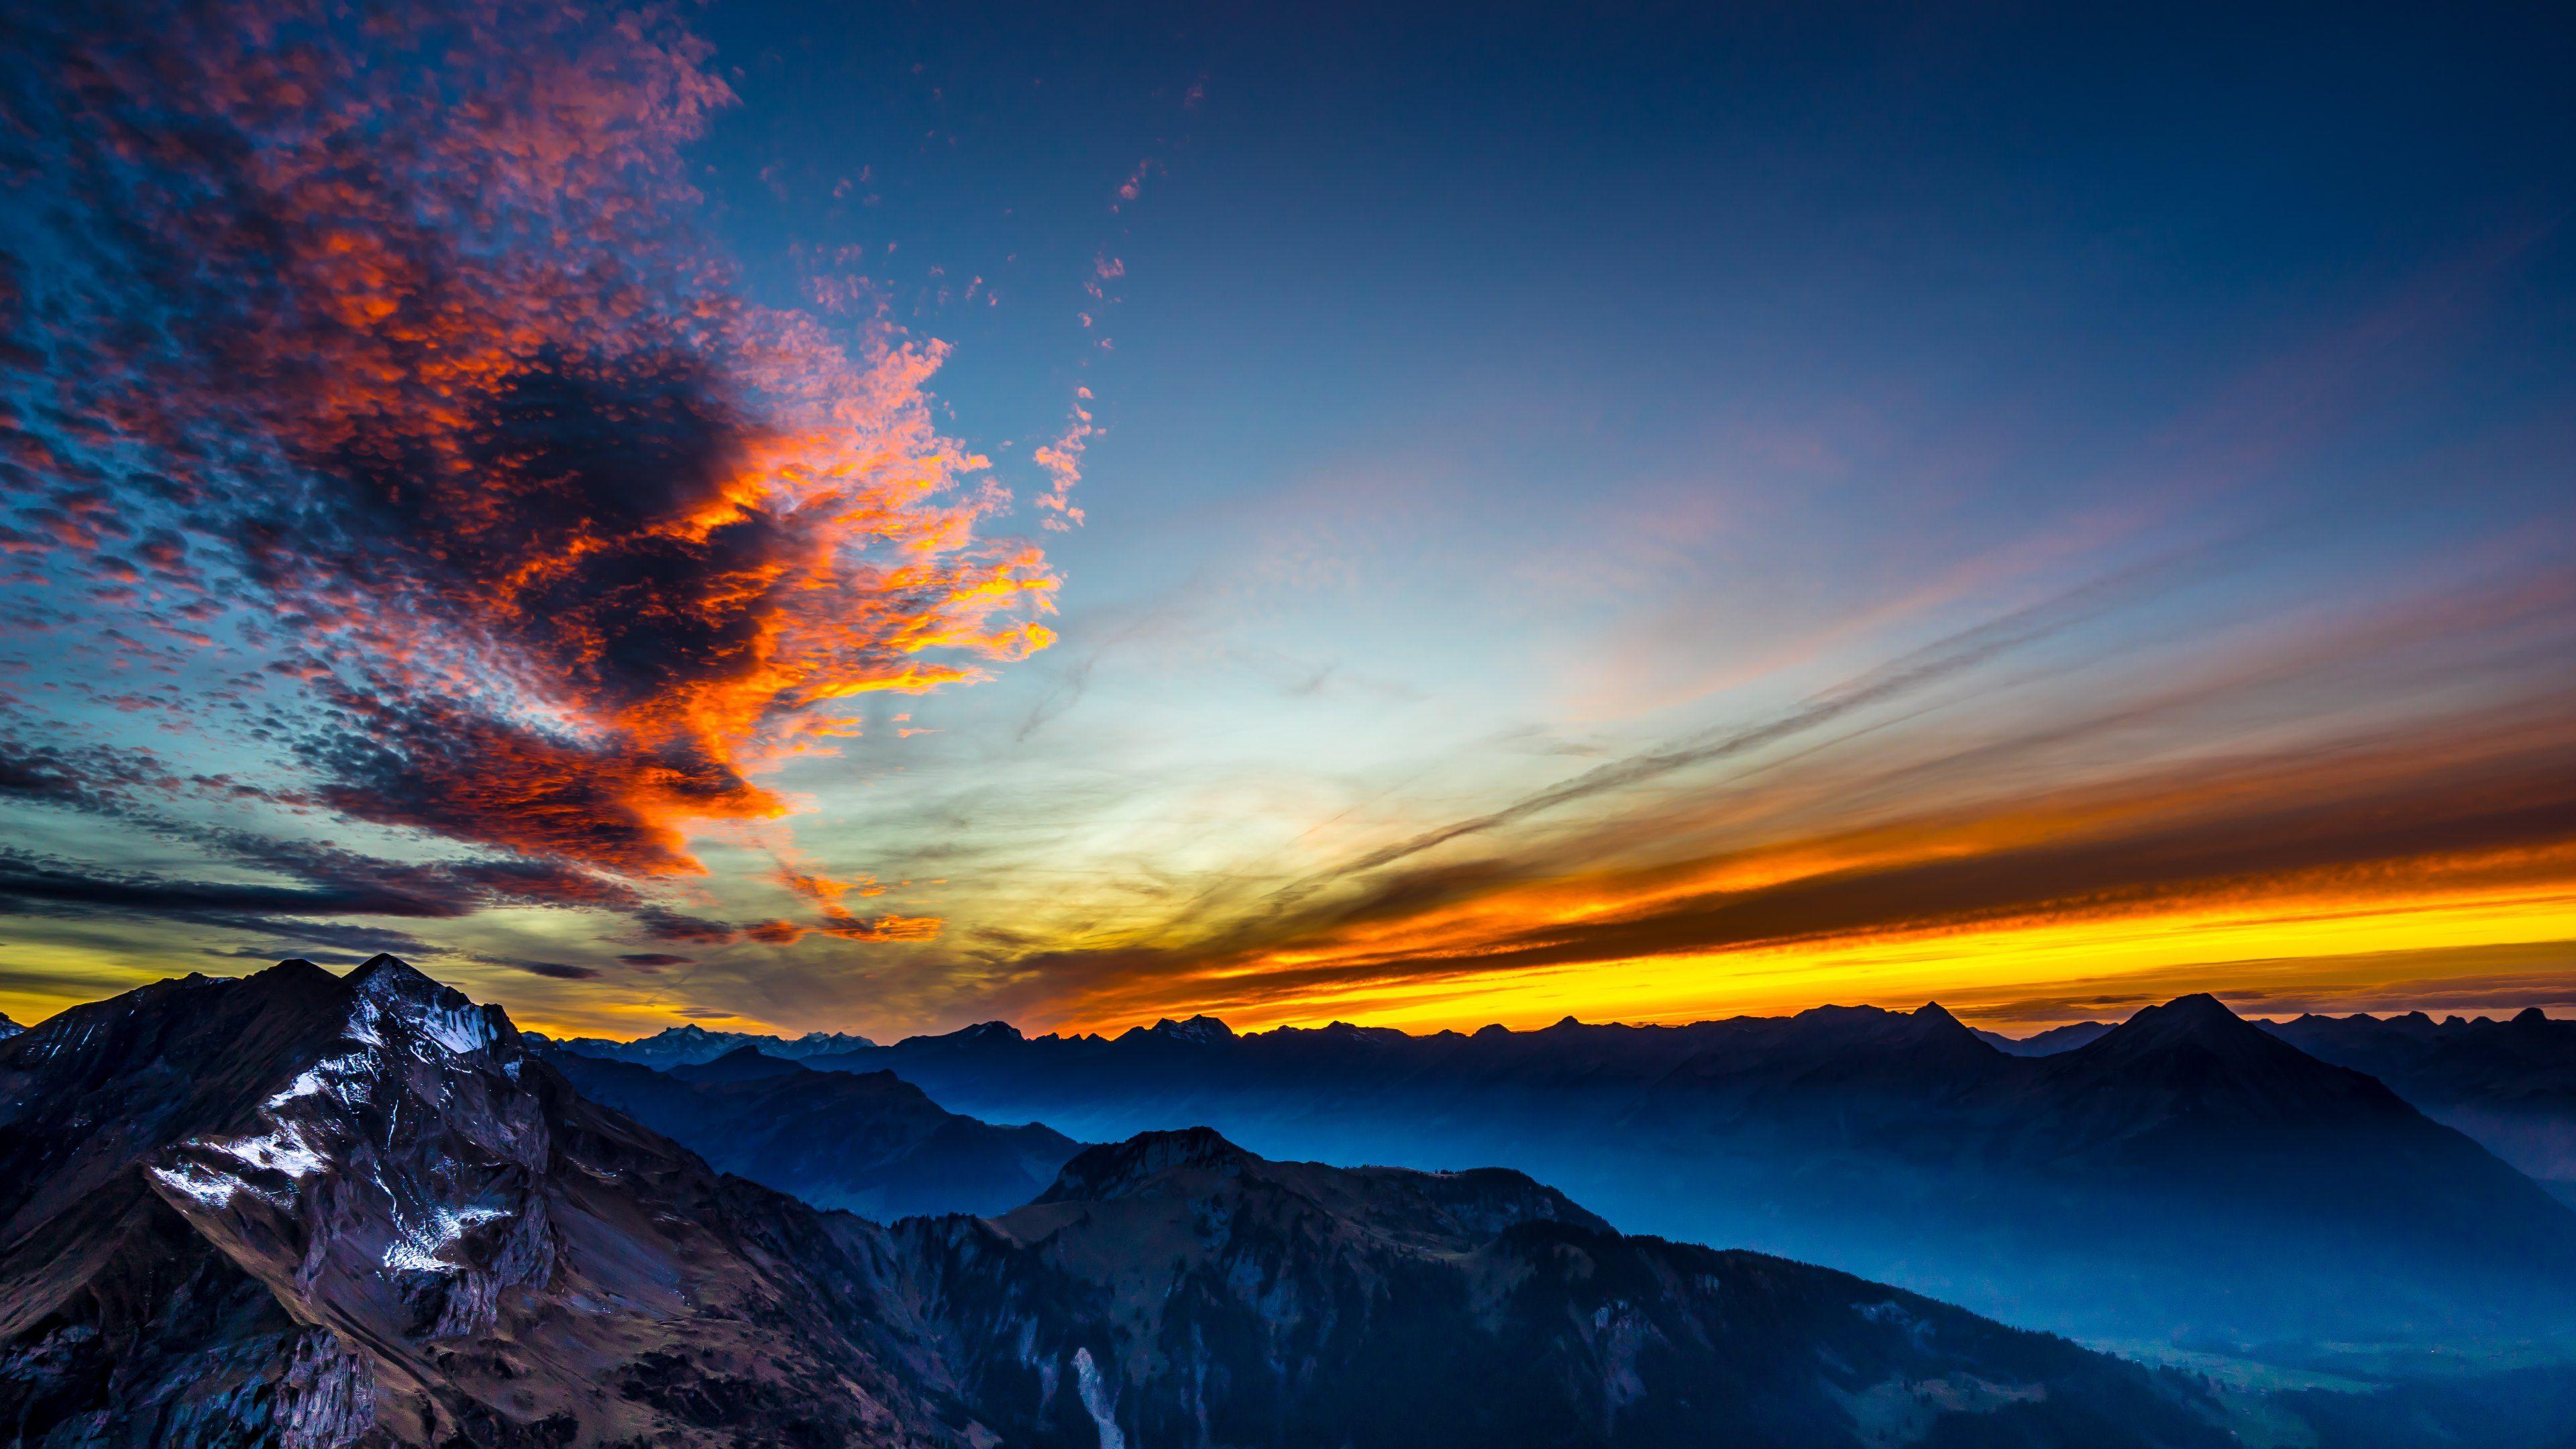 Mountain Sunset 4k Ultra HD Wallpaper